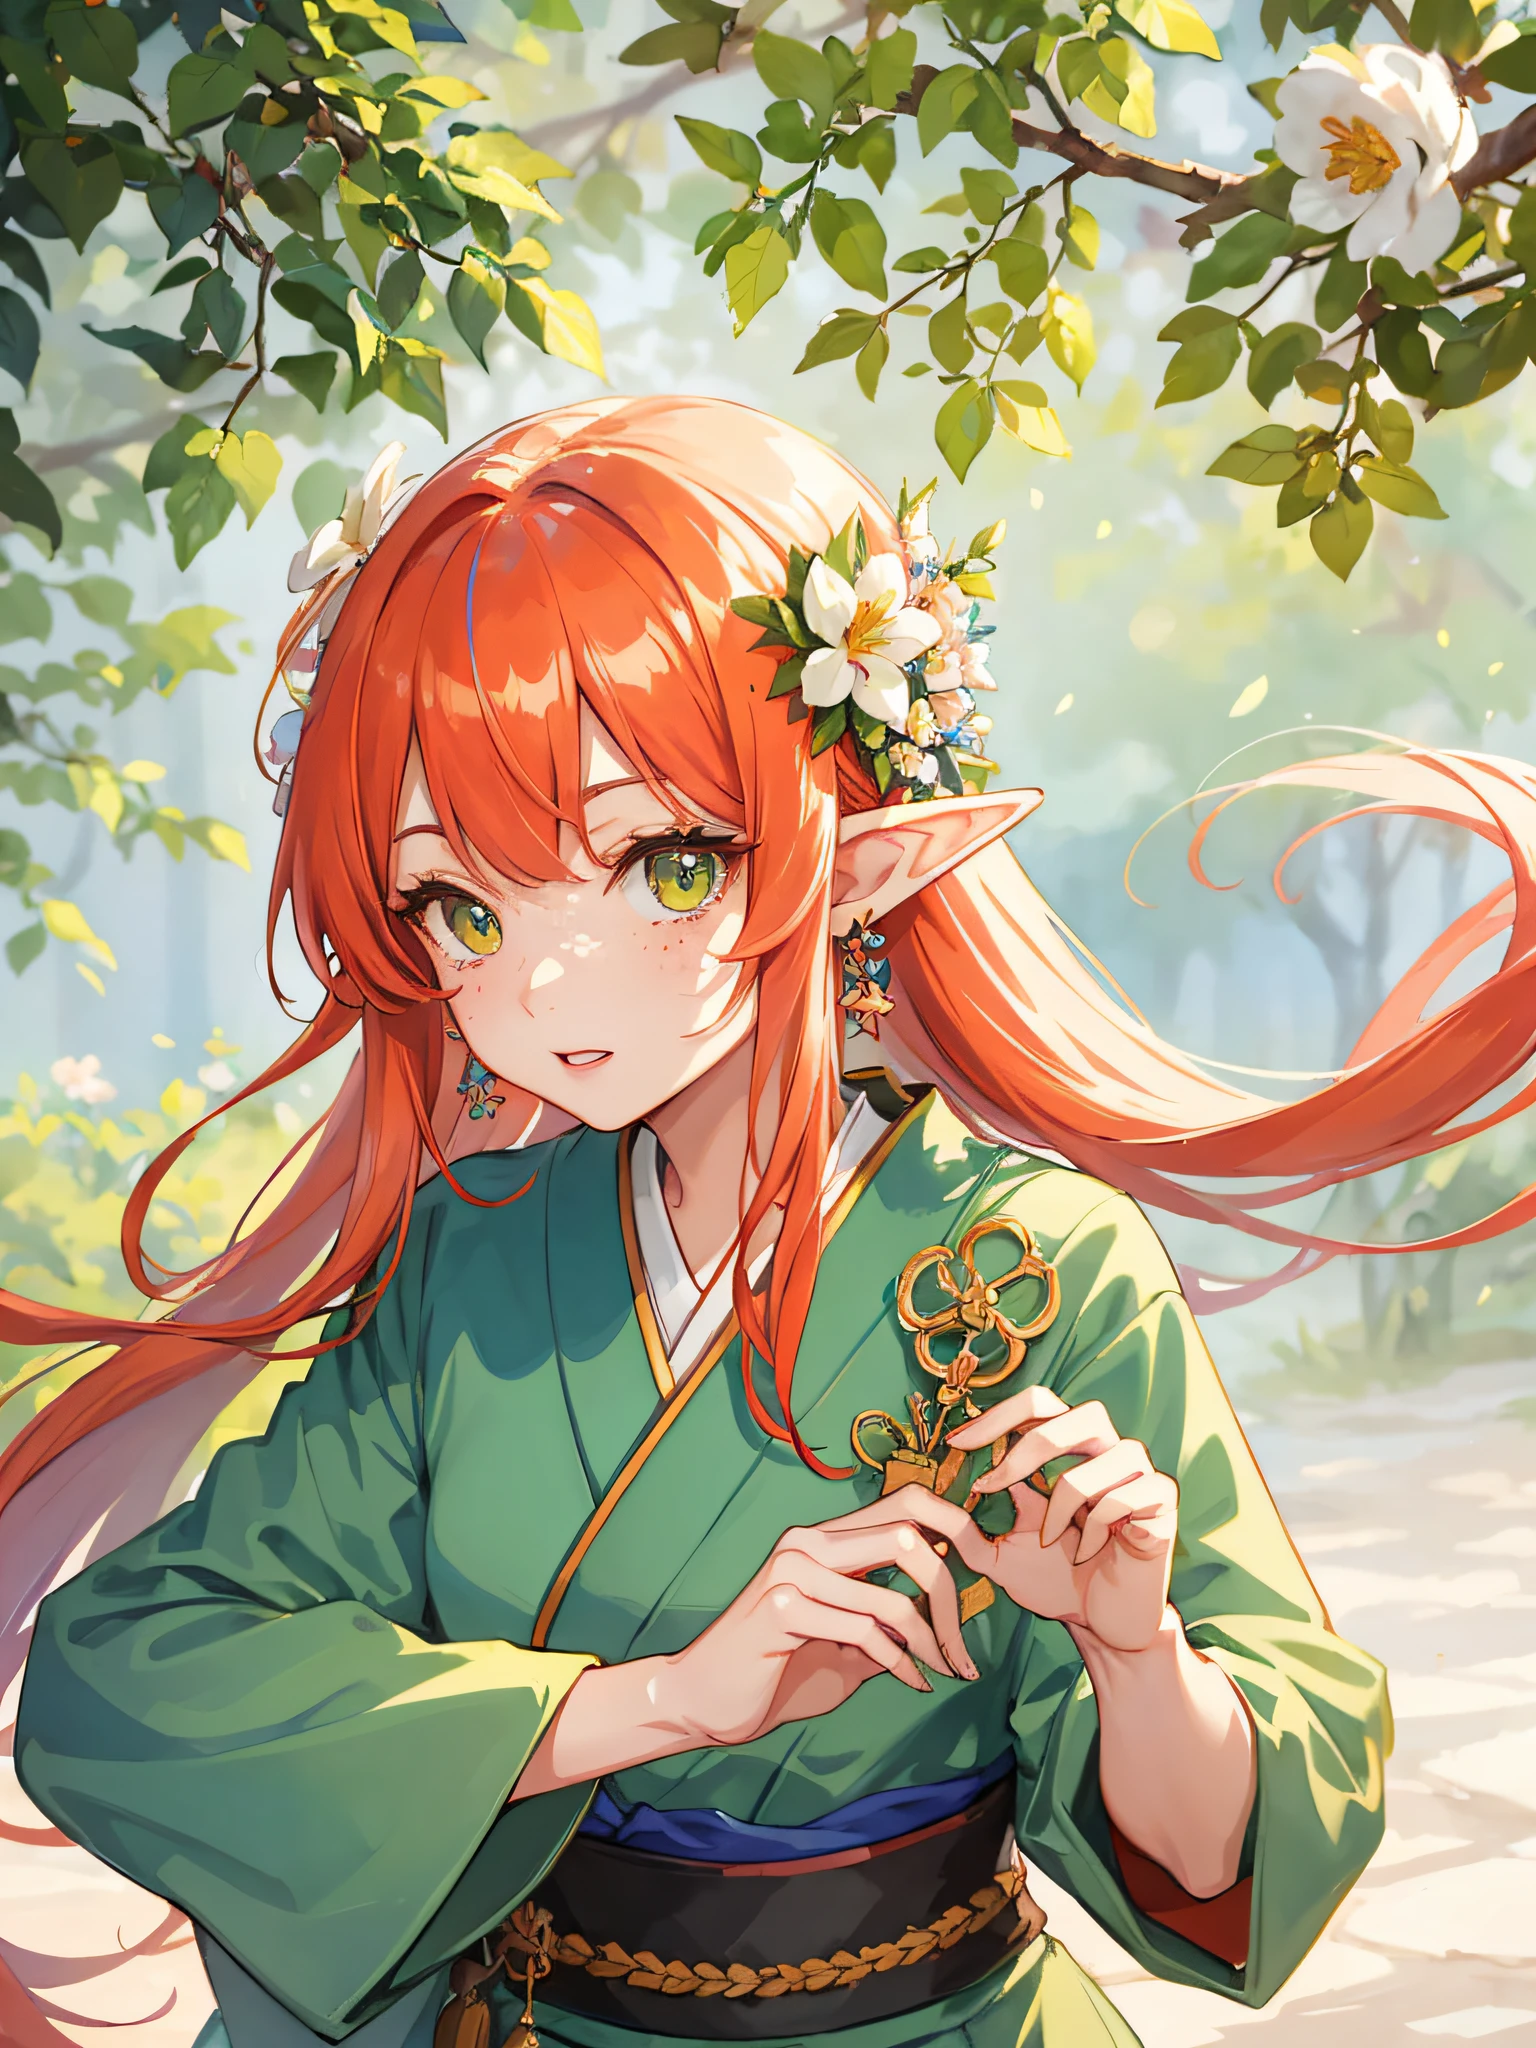 (aquarela: 1.2), princesa elfa japonesa, flor, sardas, franja, ruiva, cabelo longo, olhos verdes, cabelo entre os olhos, flor earrings, fundo desfocado, alta resolução